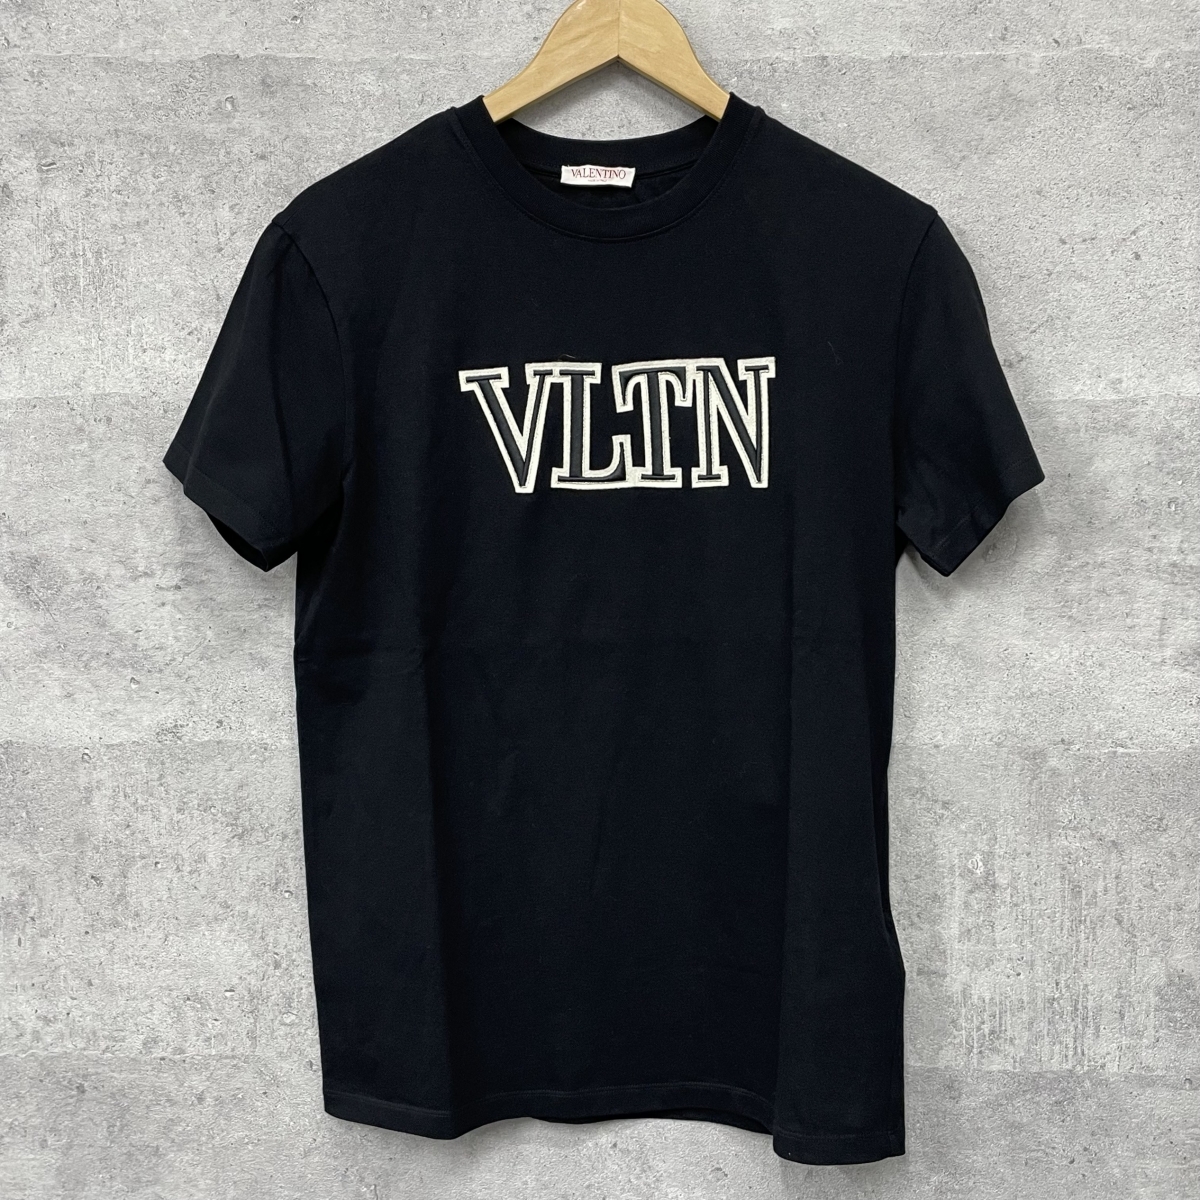 ヴァレンティノのブラック 1V3MG10V8R8 フロントロゴ 半袖Tシャツの買取実績です。